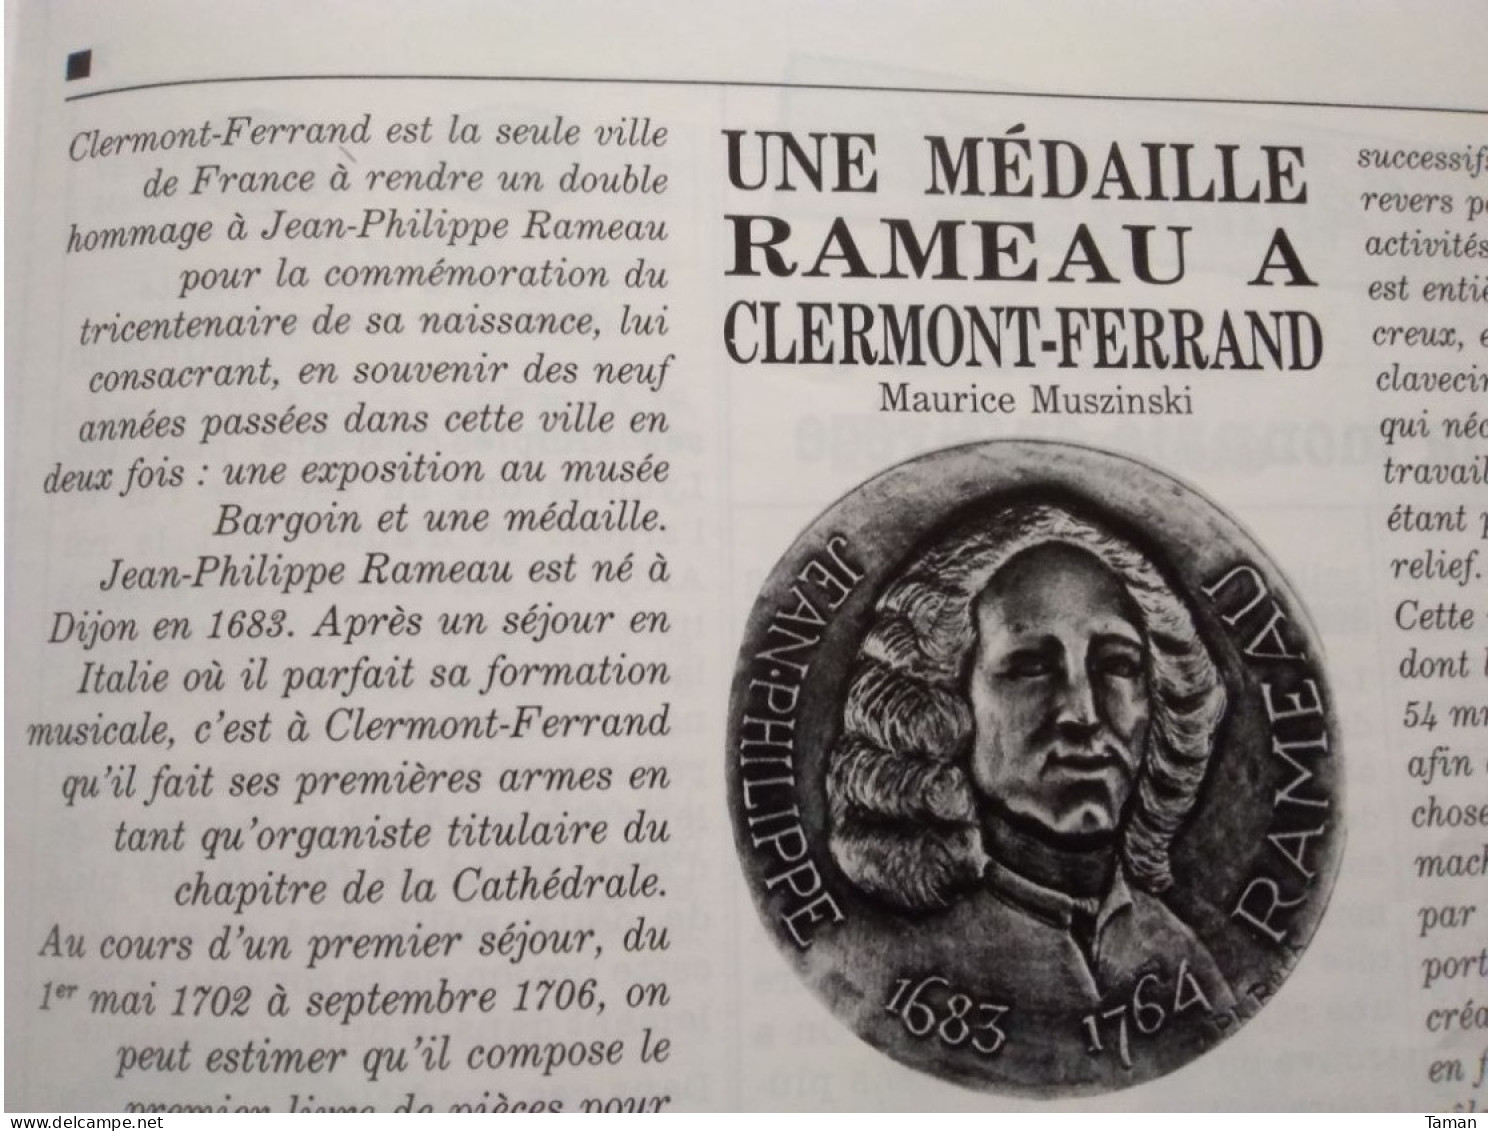 Numismatique & Change - Tsar Pierre Le Grand - Rameau - La Monnaie En Grèce - Monnaies Hellénistiques - Demi-gros - Französisch